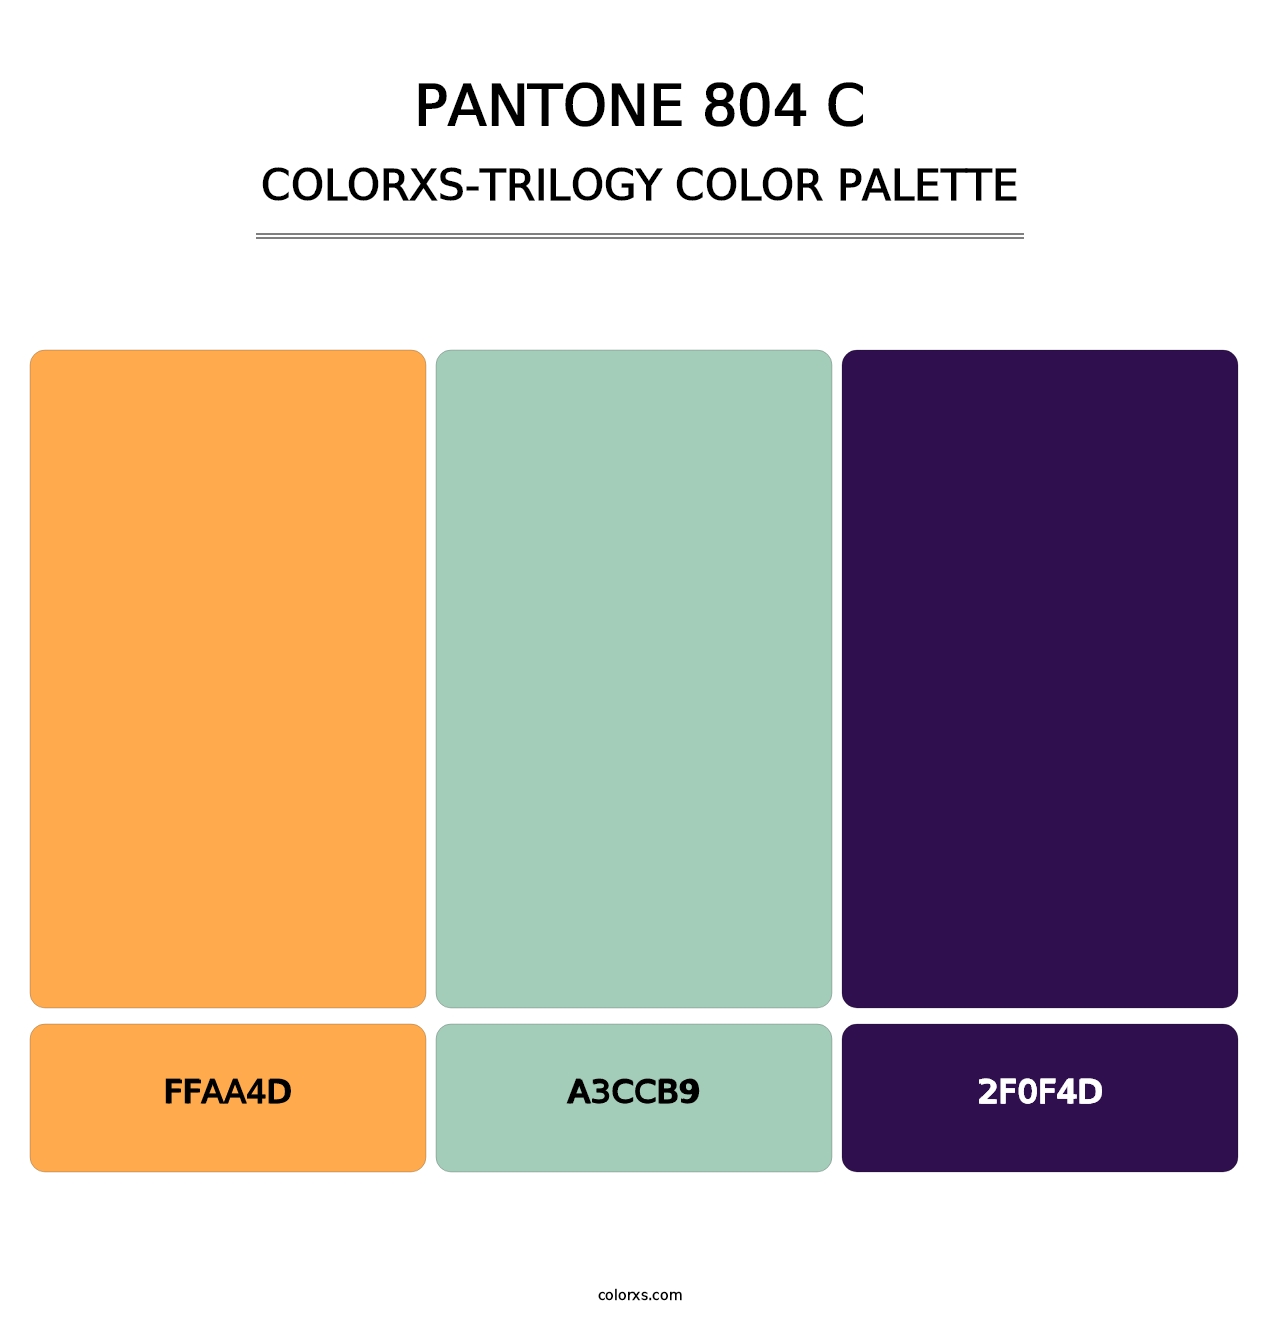 PANTONE 804 C - Colorxs Trilogy Palette